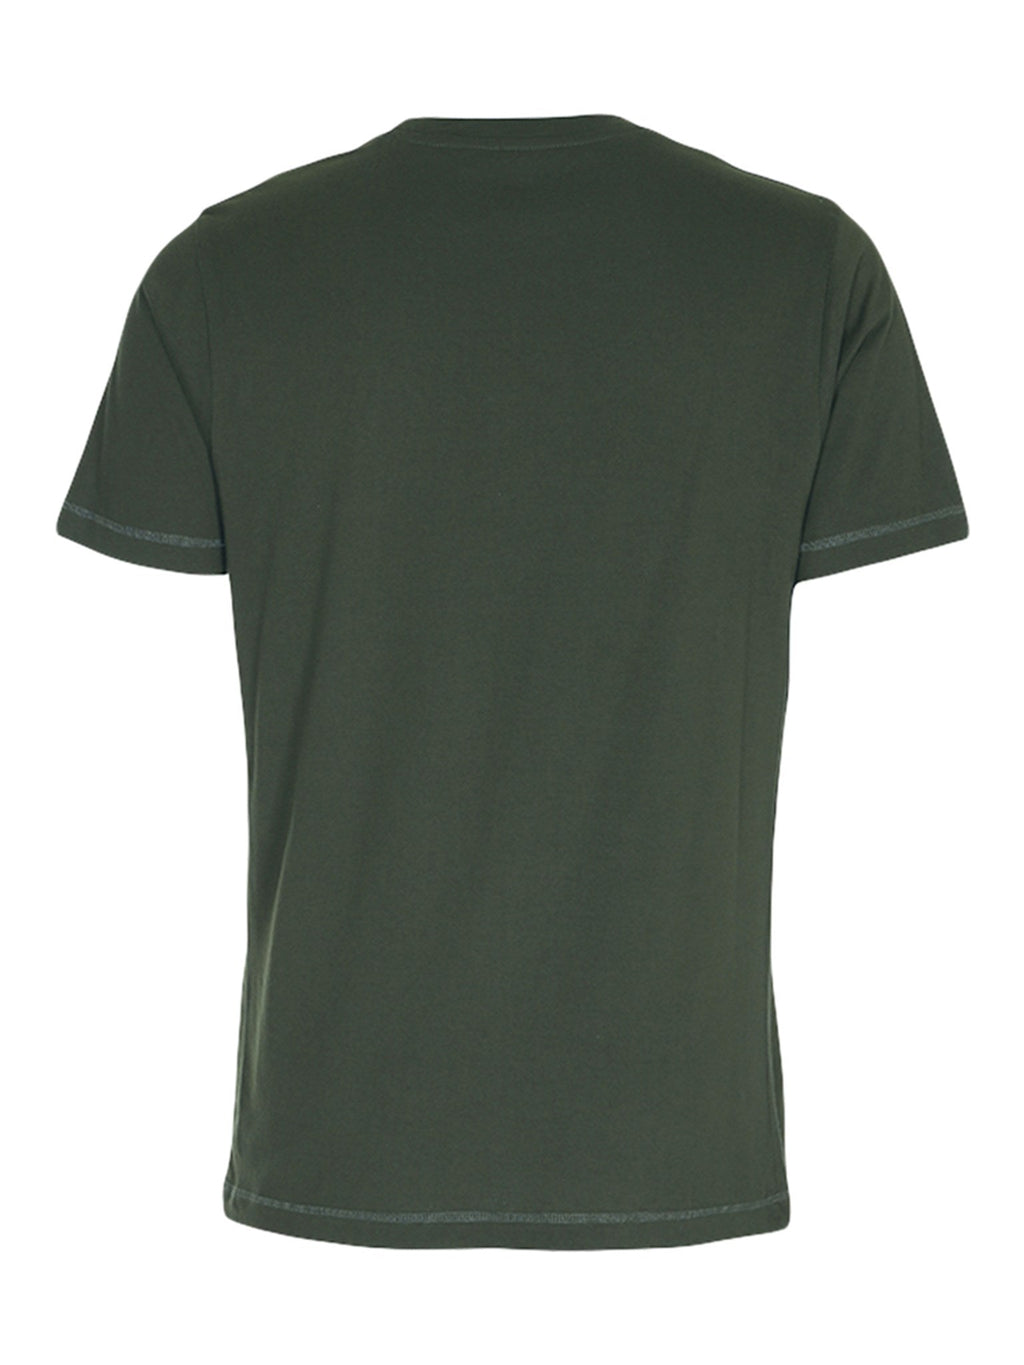 T -shirt di base organica - verde scuro